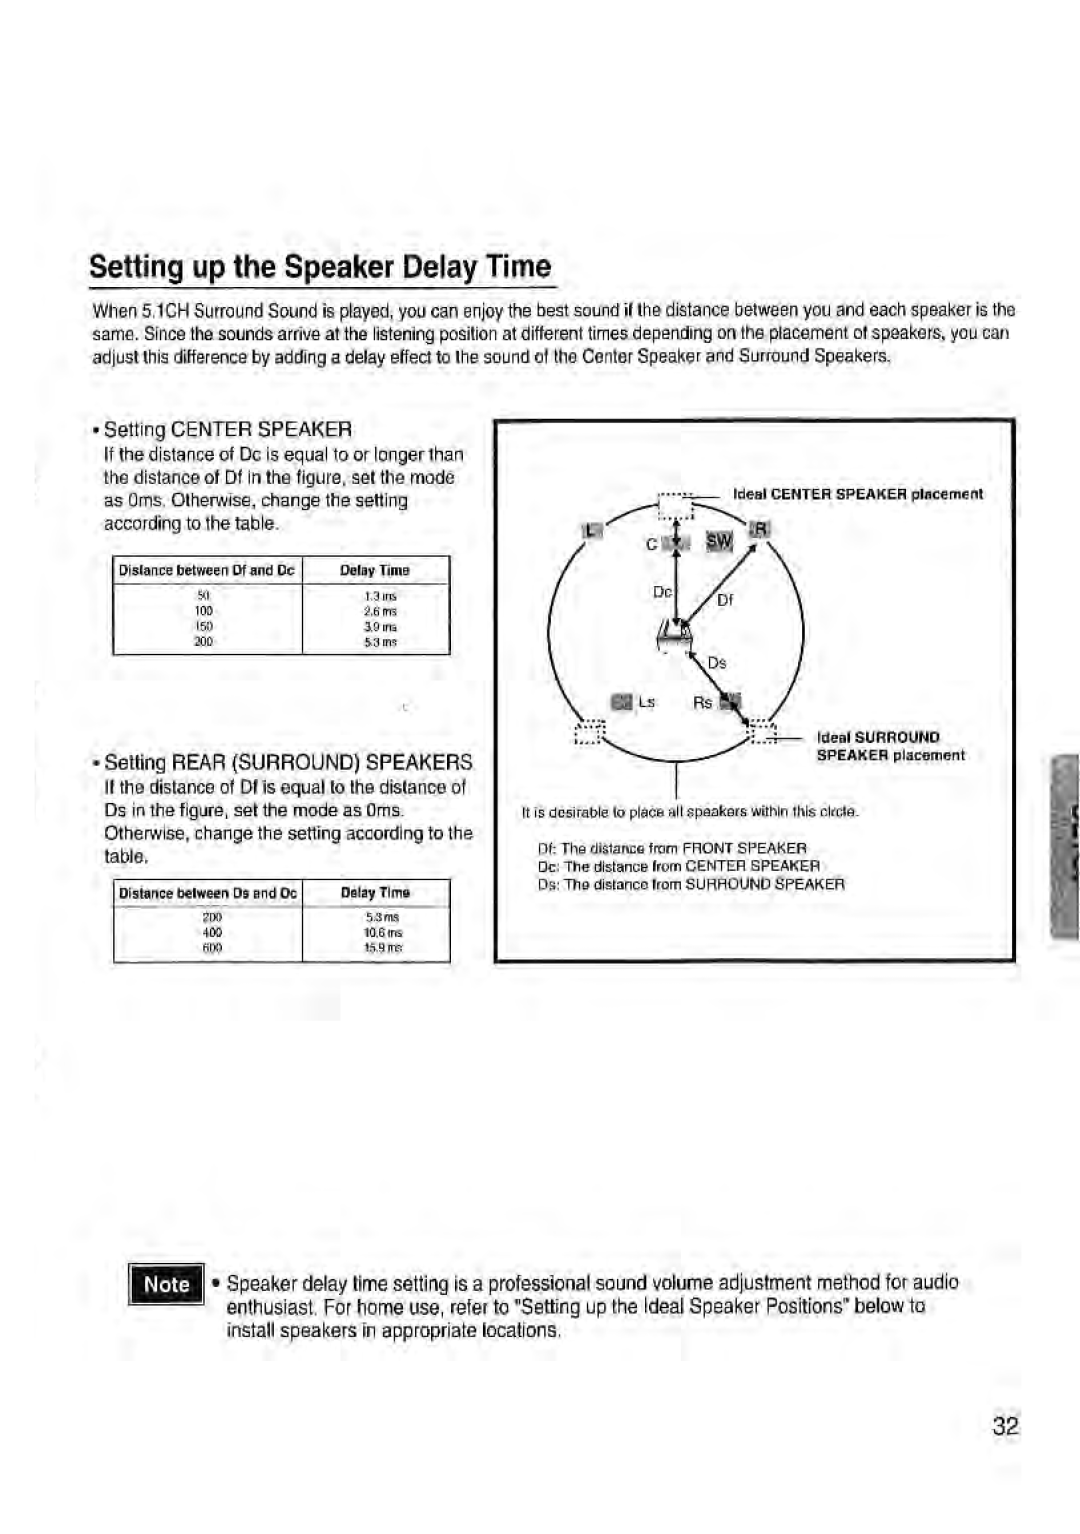 Toshiba SD-43HK owner manual Setting up the Speaker Delay Time, •Setting CENTER SPEAKER 